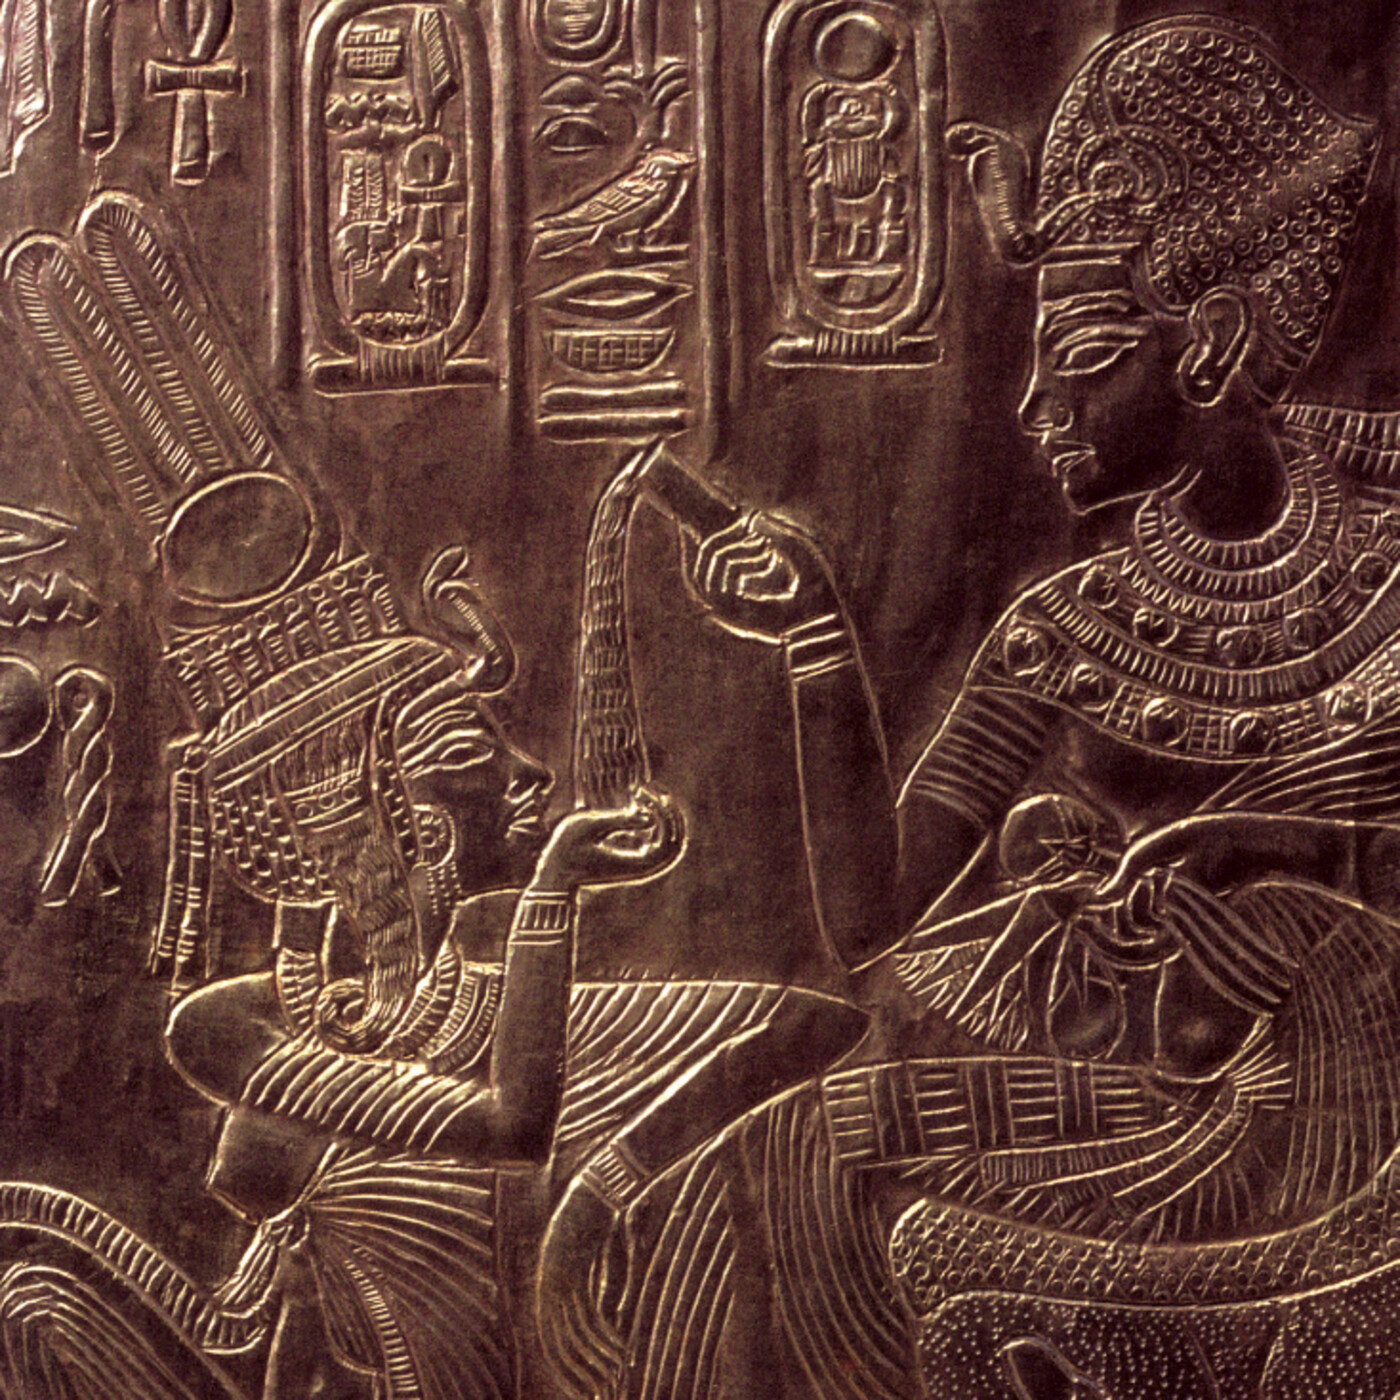 La Sexualidad En El Antiguo Egipto From Curiosidades De La Historia National Geographic On Hark